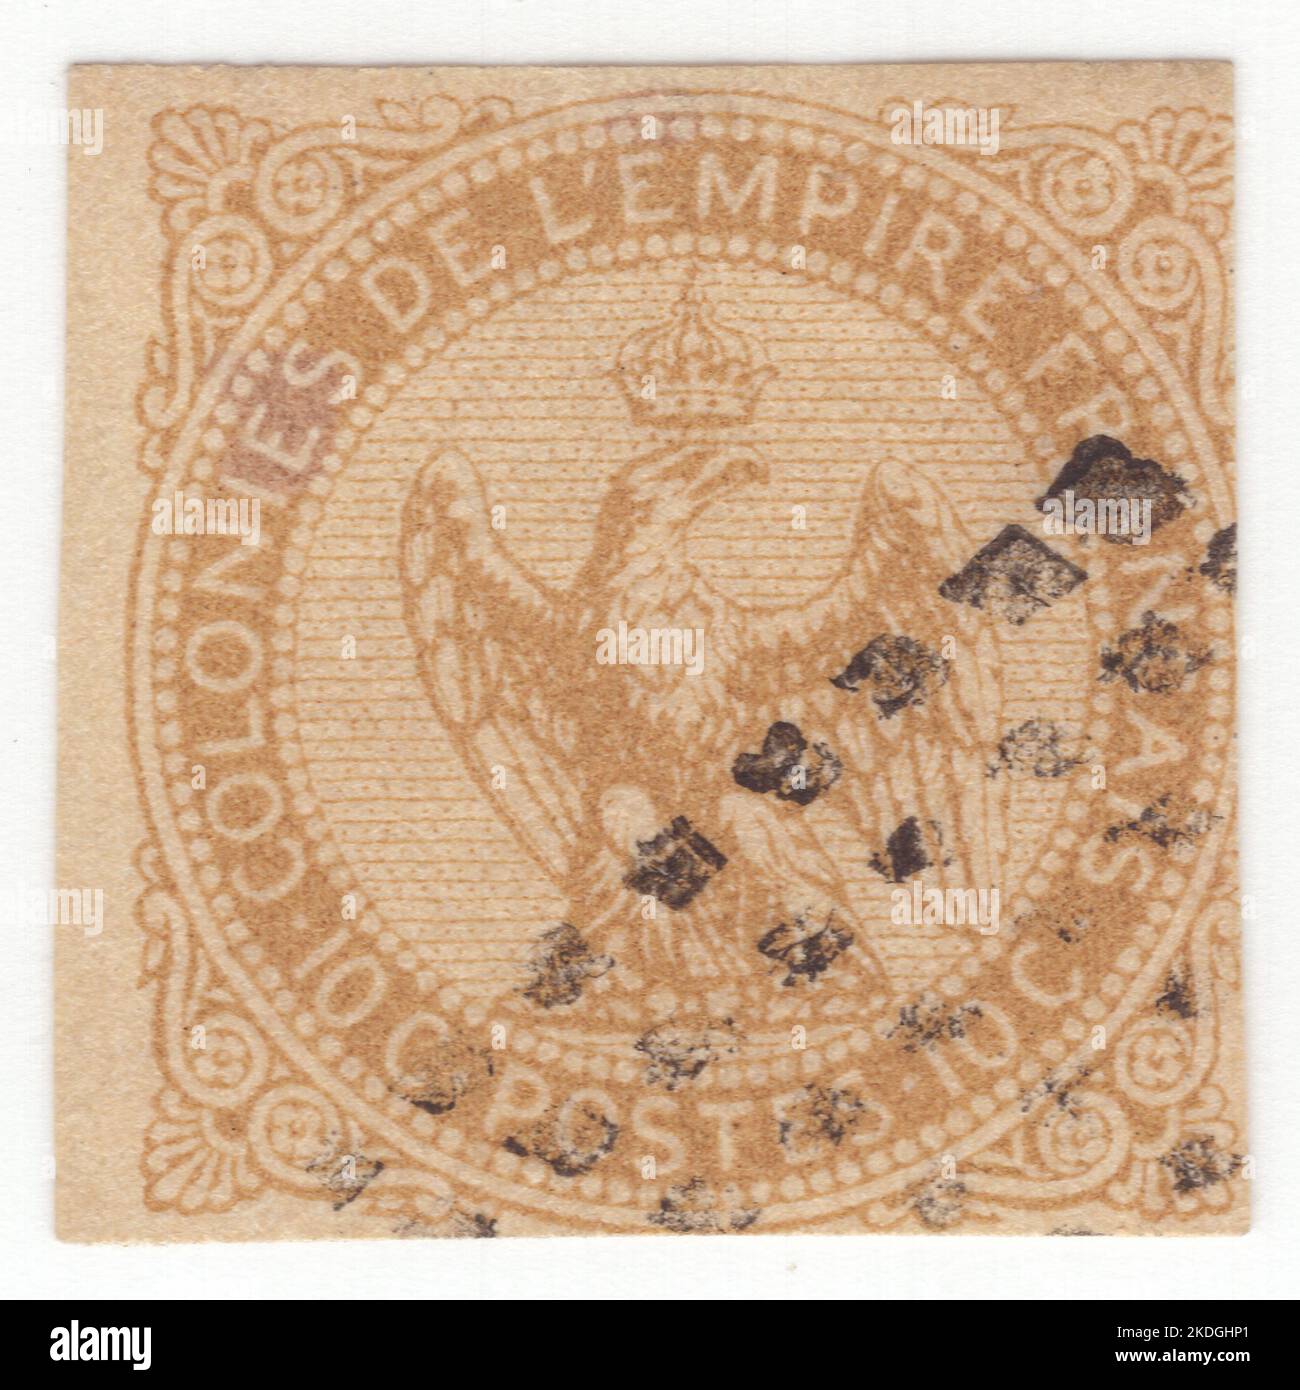 COLONIAS FRANCESAS - 1859: Un bister de 10 centésimas en sello de franqueo amarillo que representa a Águila sosteniendo un rayo y una corona, elementos principales del Escudo de Armas del Segundo Imperio Francés de Napoleón III Foto de stock